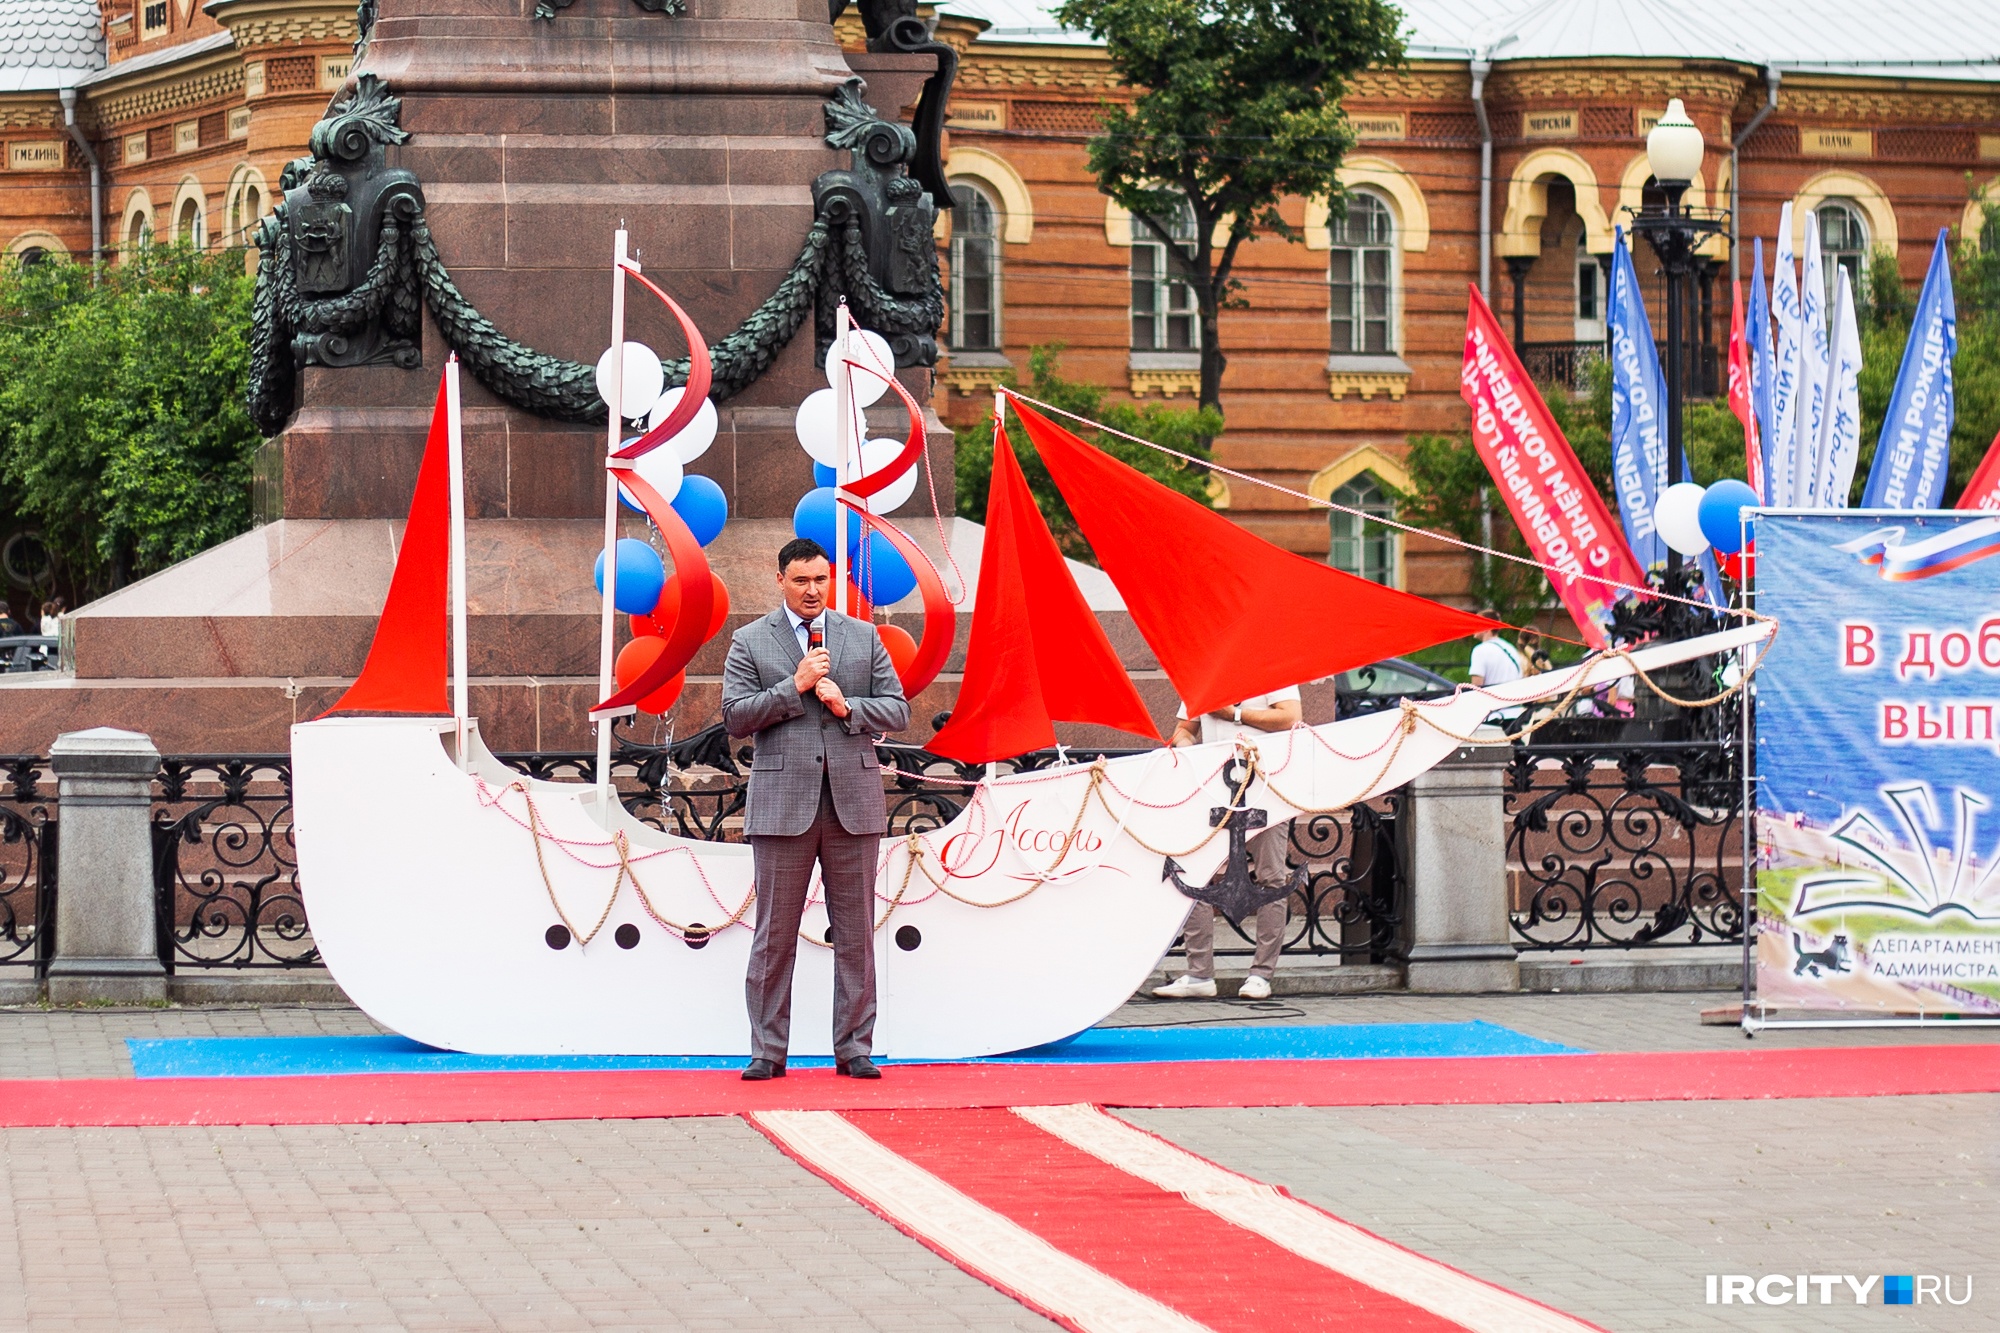 На церемонии присутствовал мэр Иркутска Руслан Болотов